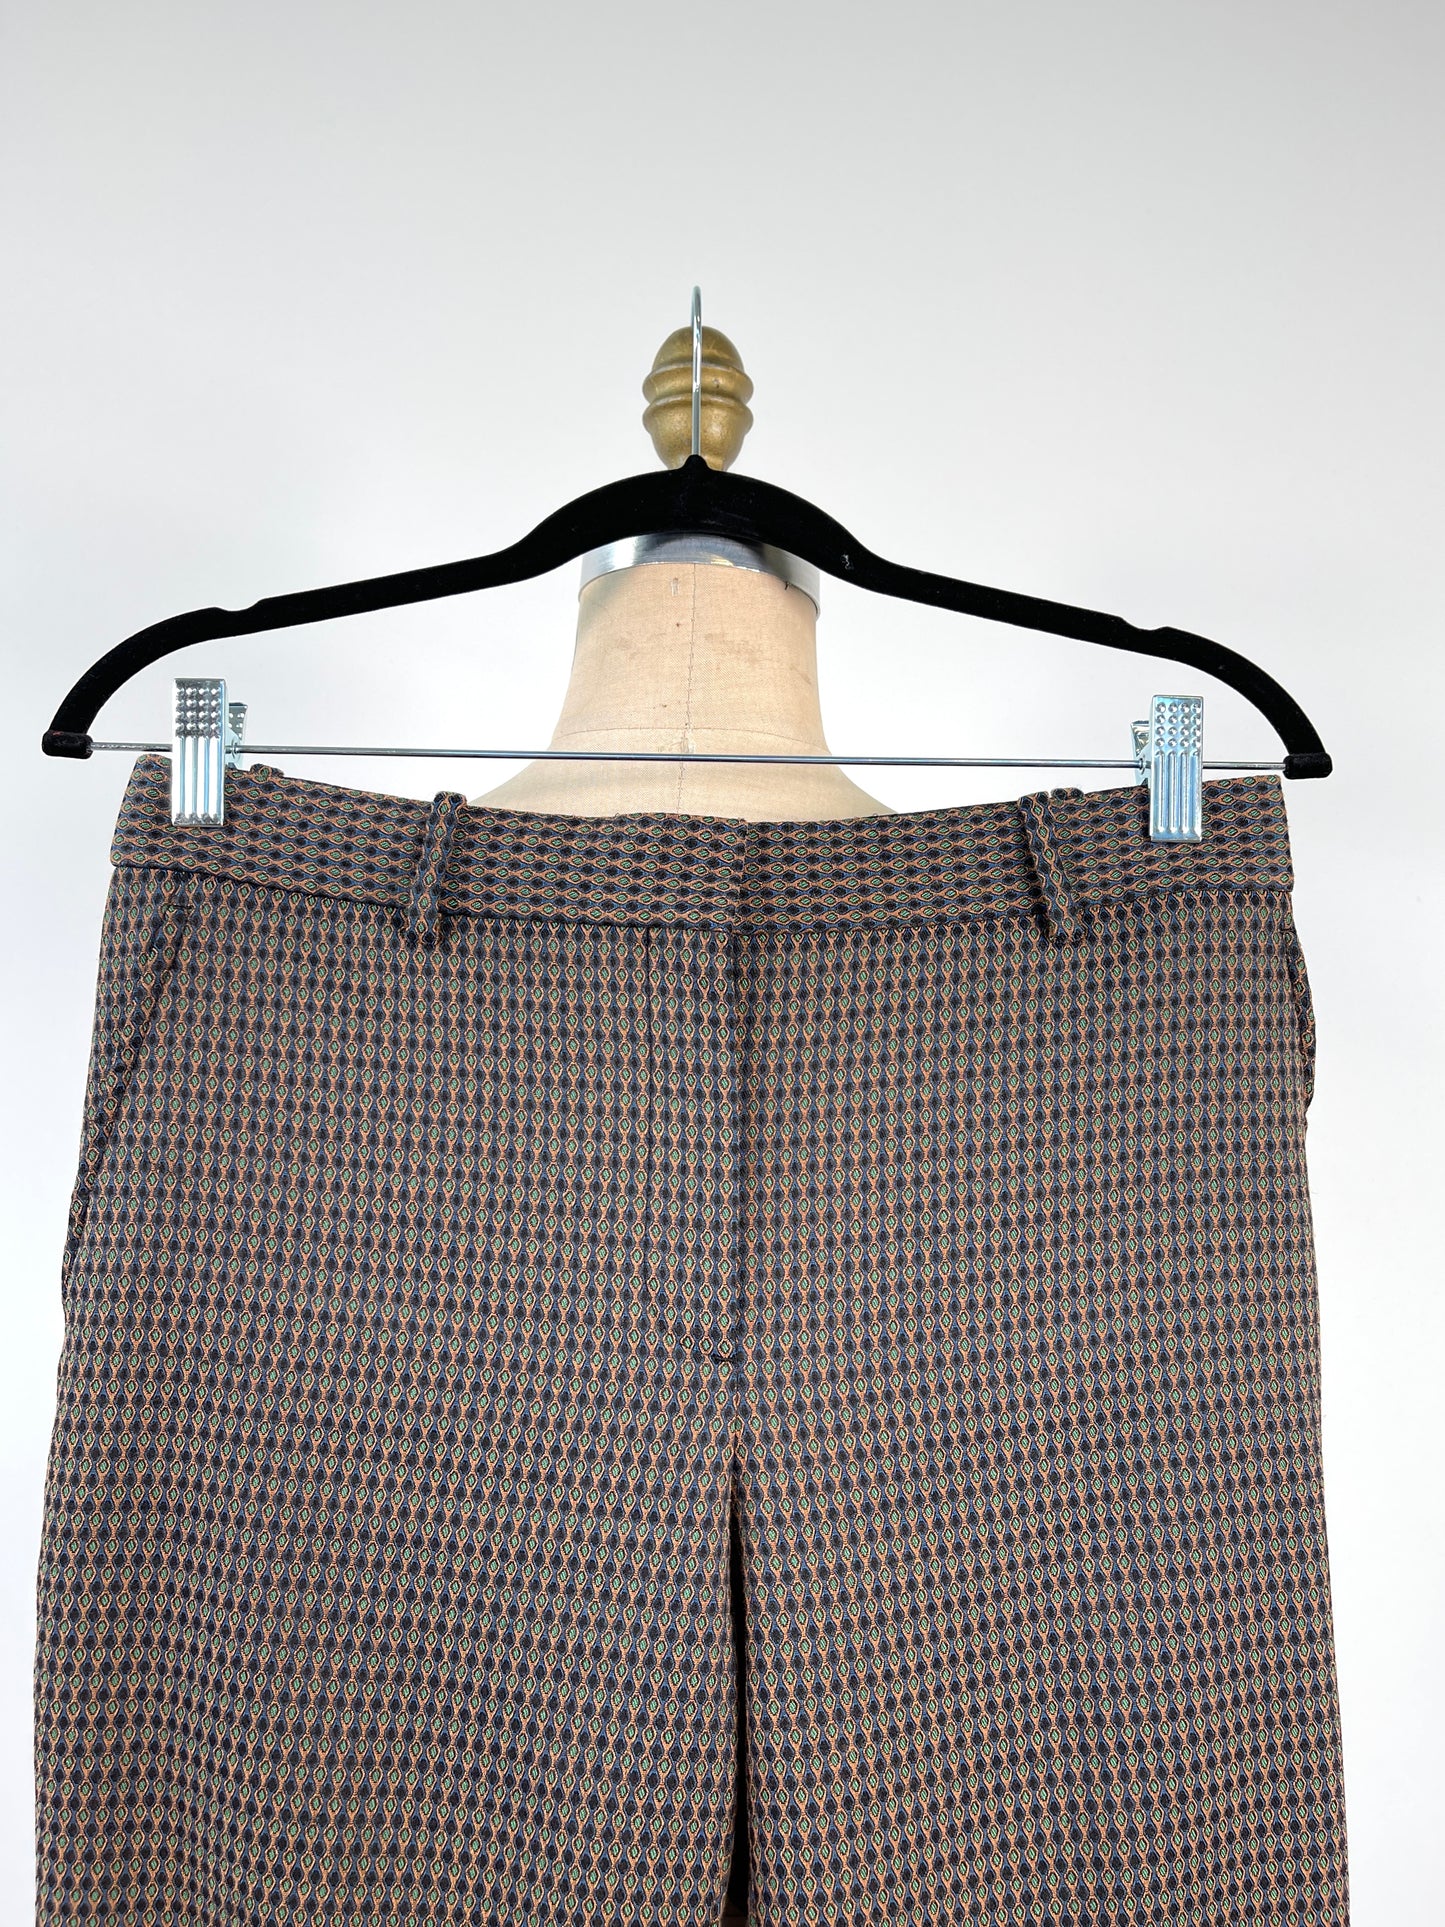 Pantalon habillé à motifs extensible (XS)